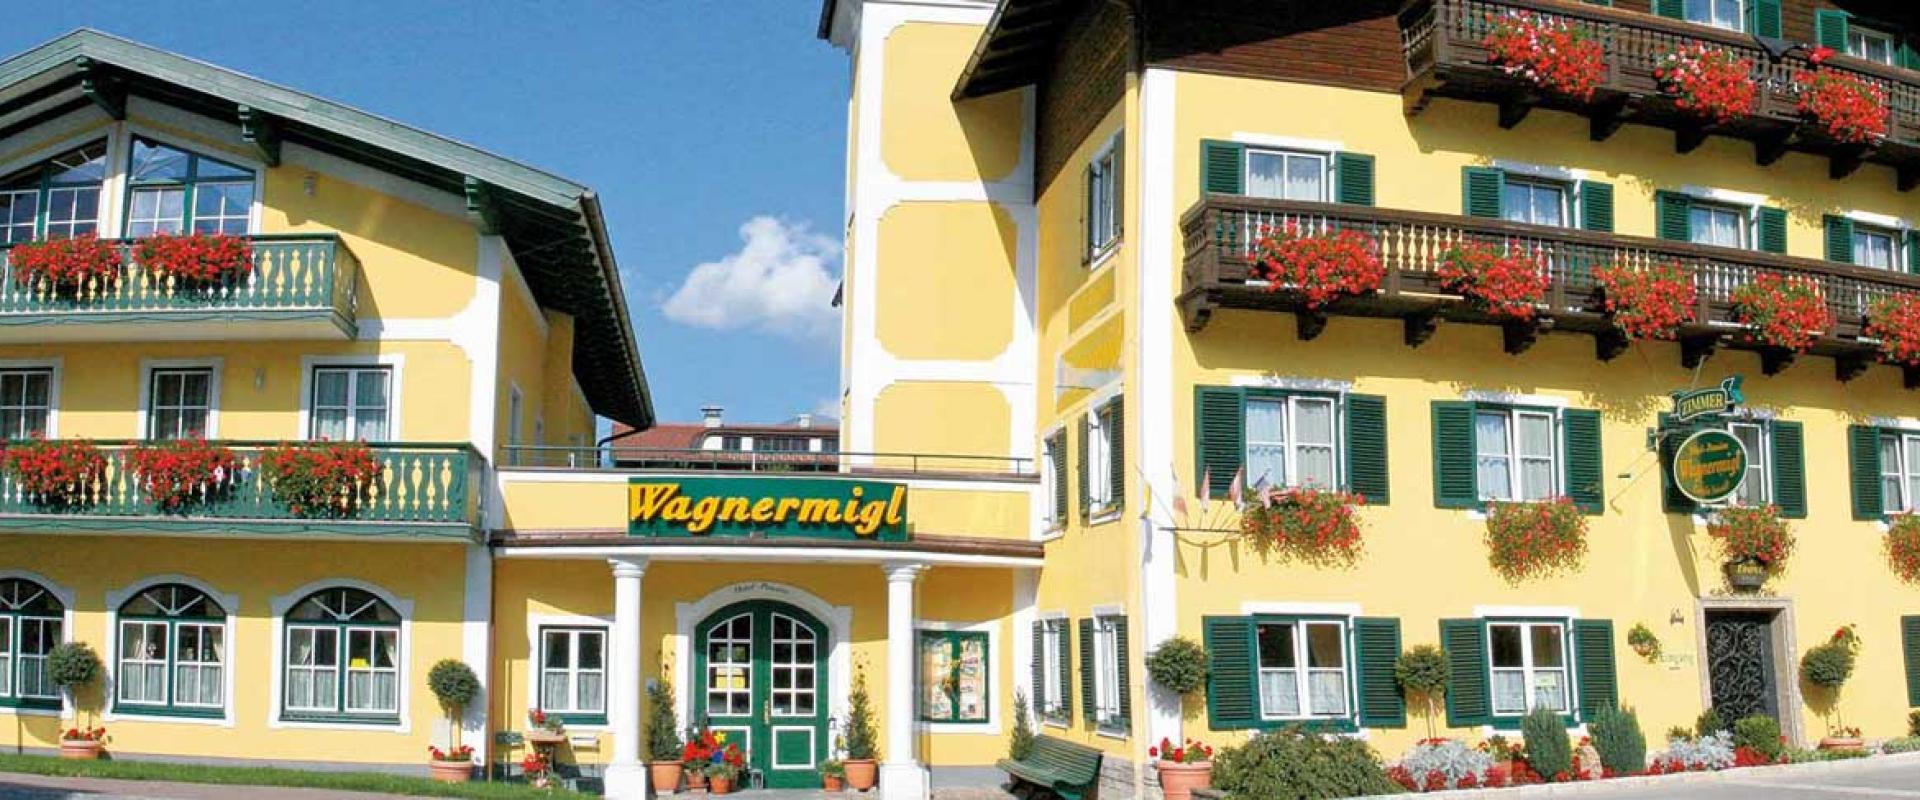 30655 Motorrad Hotel Wagnermigl Salzburger Land.jpg